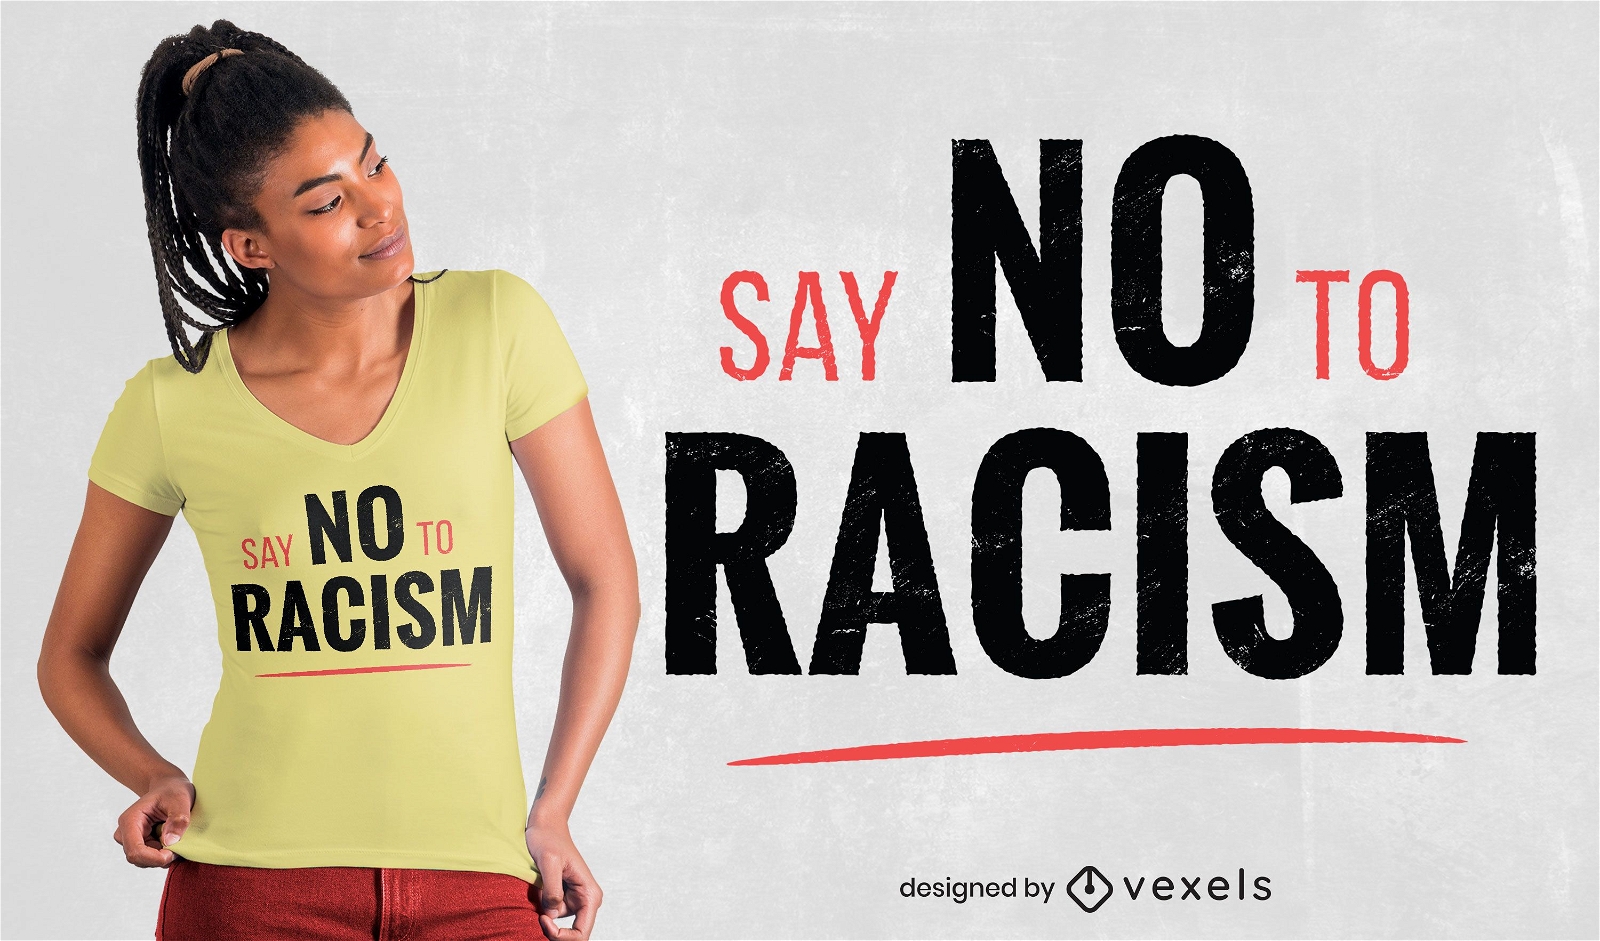 dise?o de camiseta sin racismo